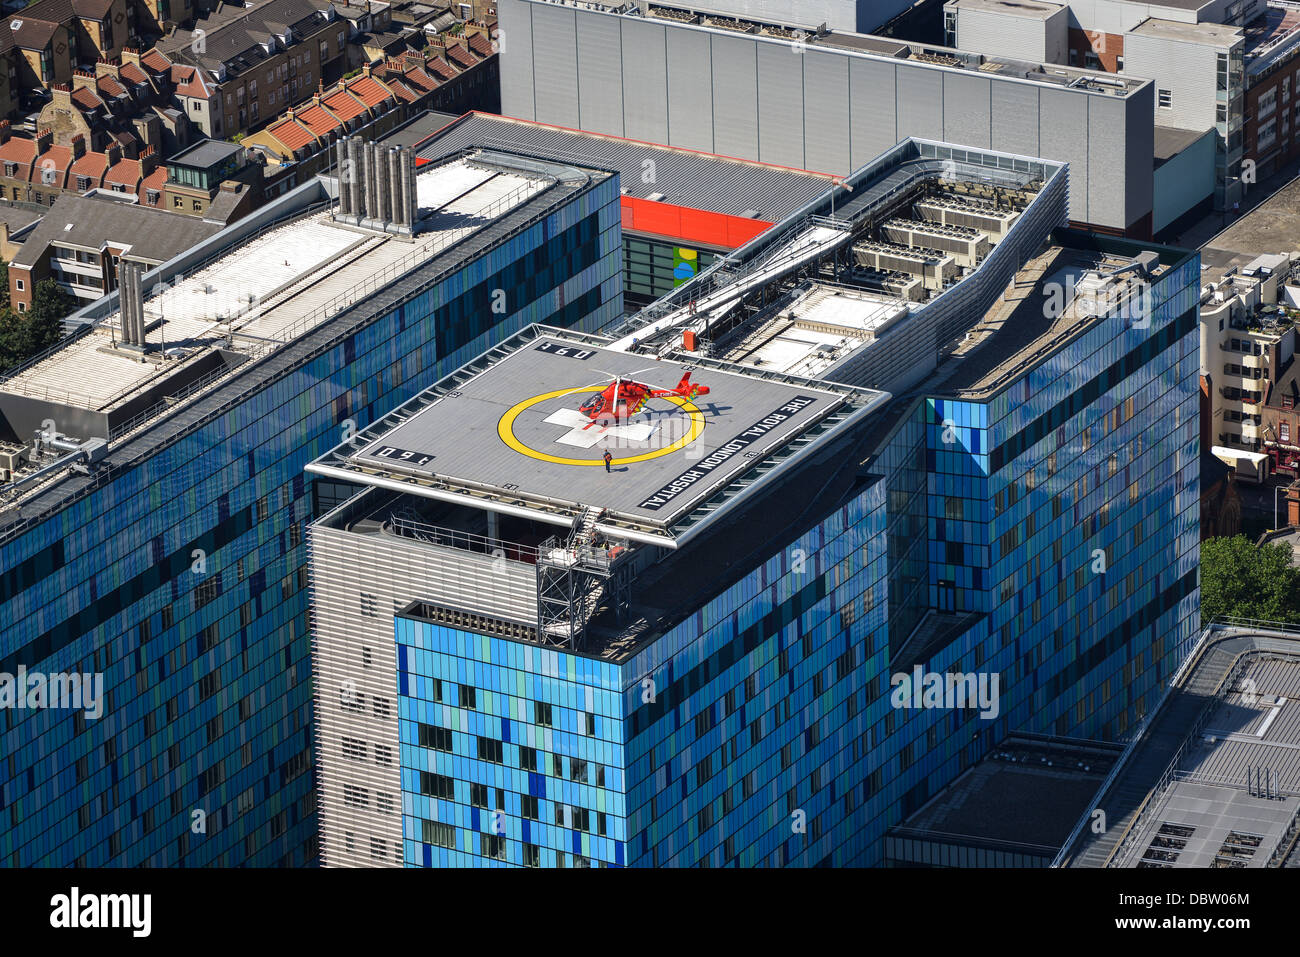 Air Ambulance at the Royal London Hospital Stock Photo